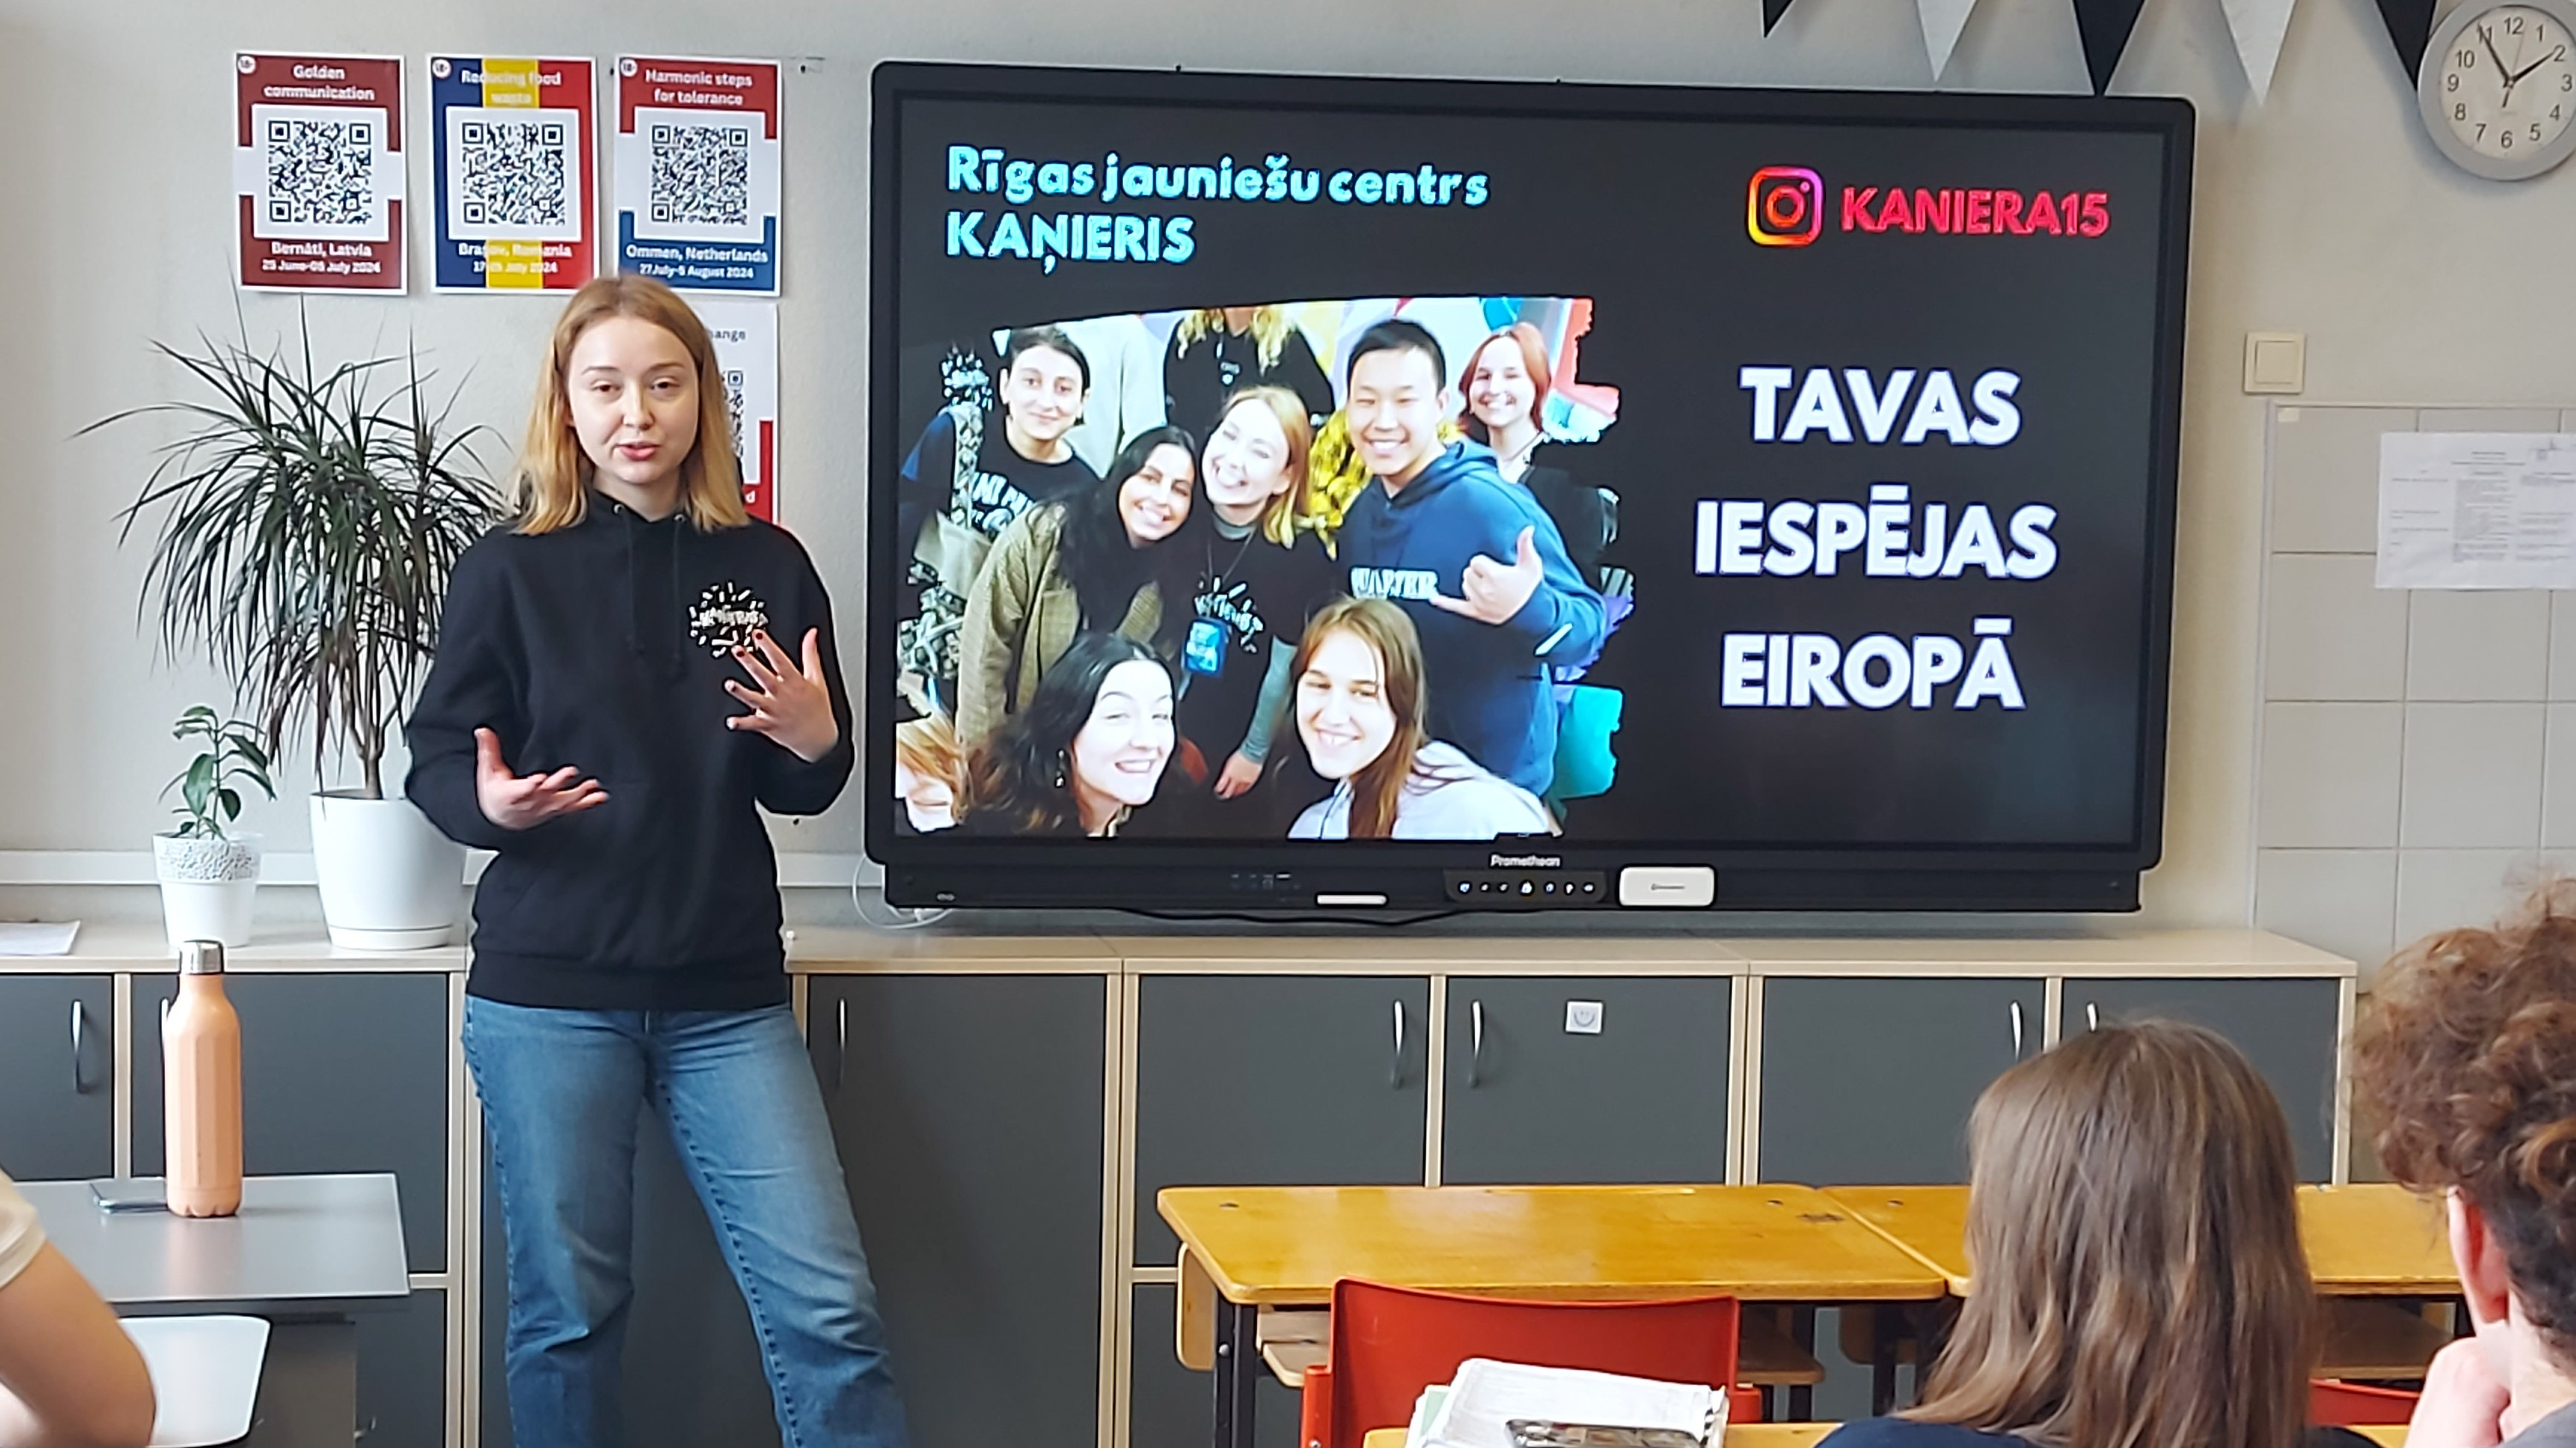 Vairāk kā 900 jaunieši uzzinājuši par iespējām Rīgā un Eiropā